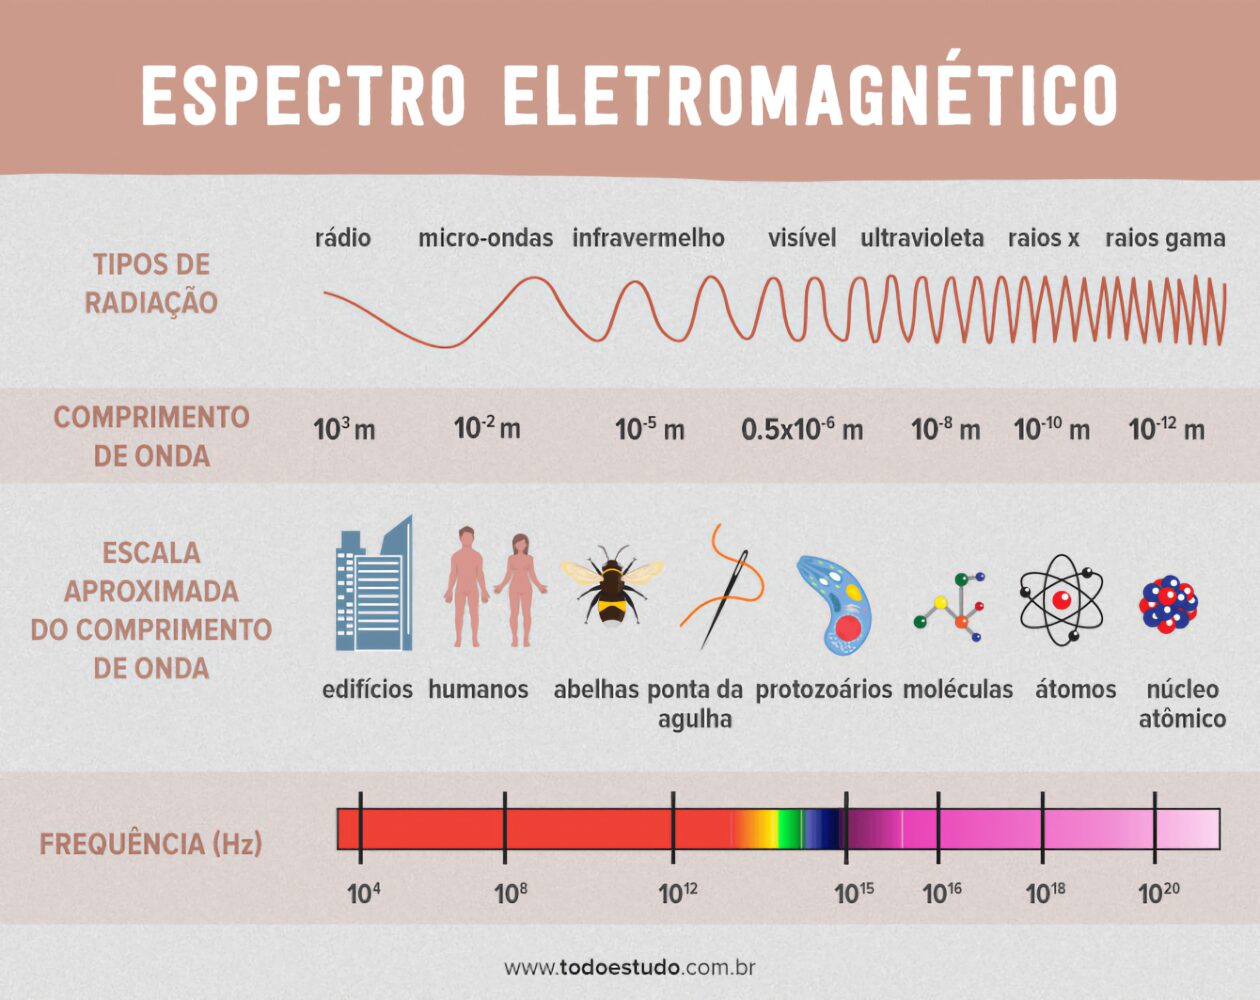 Espectro eletromagnetico